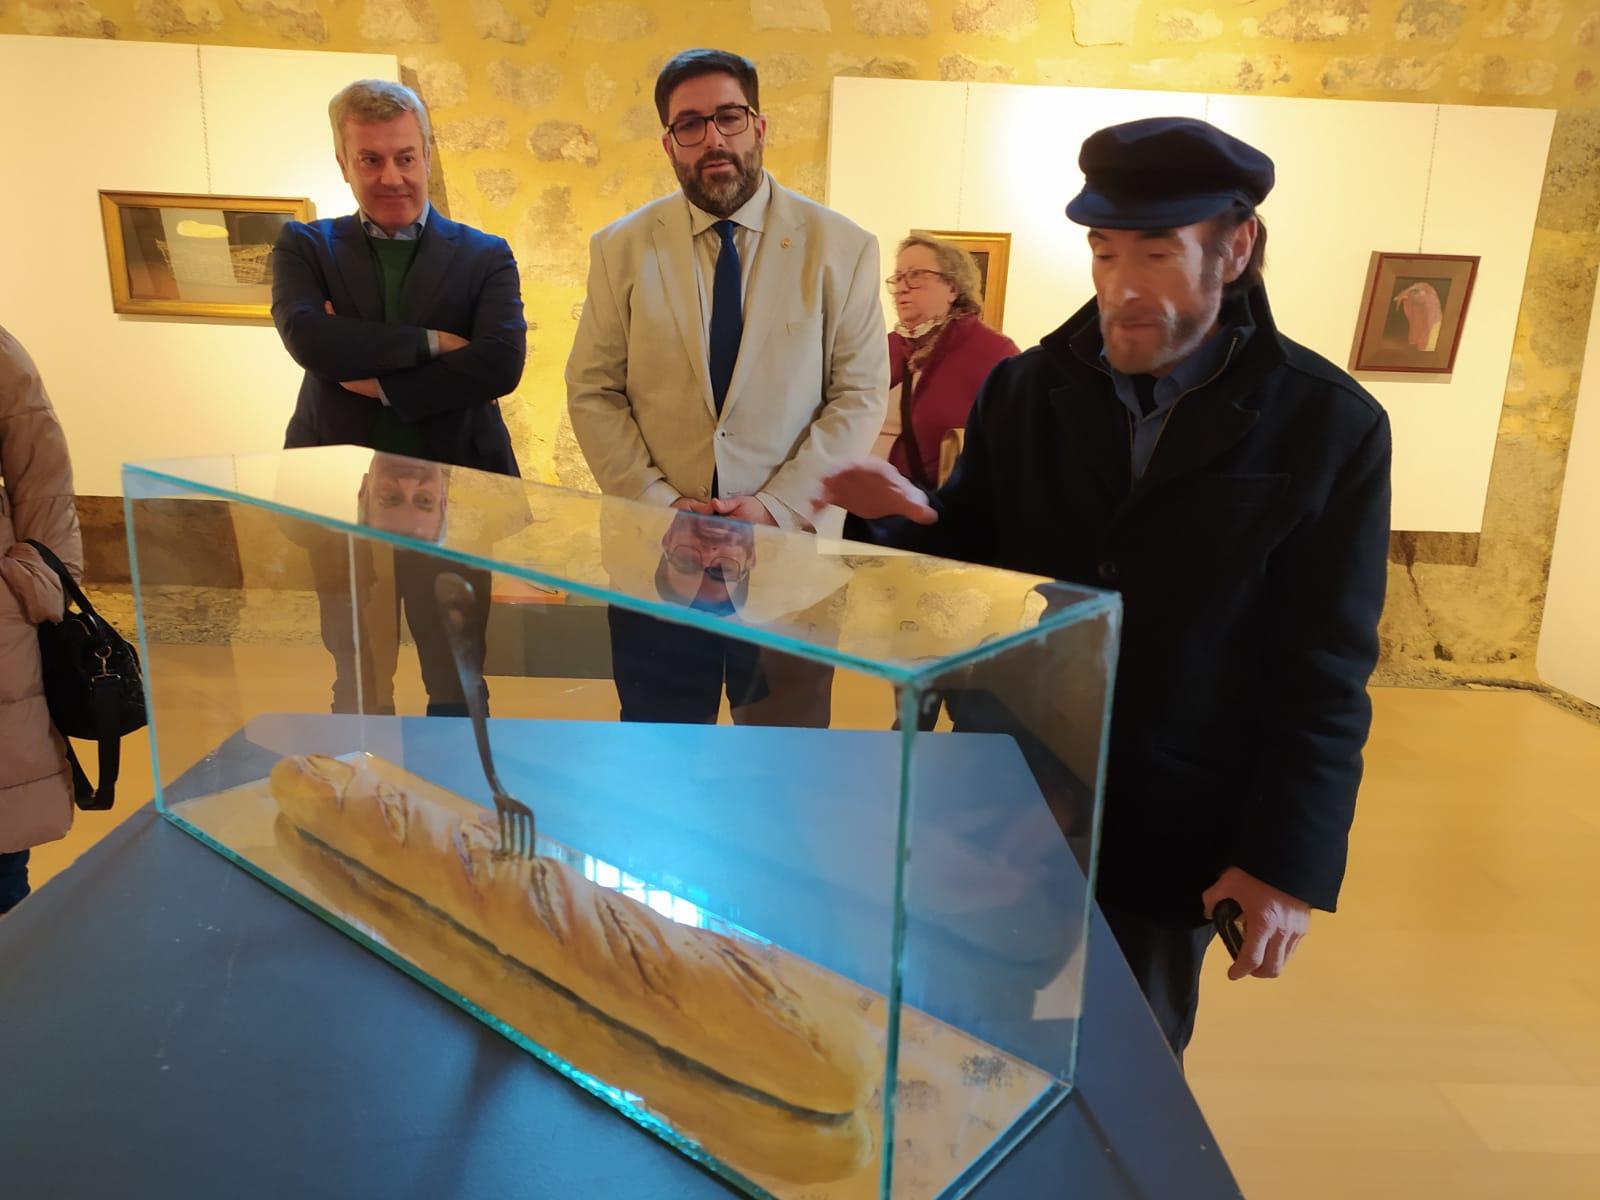 Acompañamos en Ávila ao noso grande artista e Fillo Predilecto Diego De Giráldez na clausura dunha nova exposición de escultura e pintura